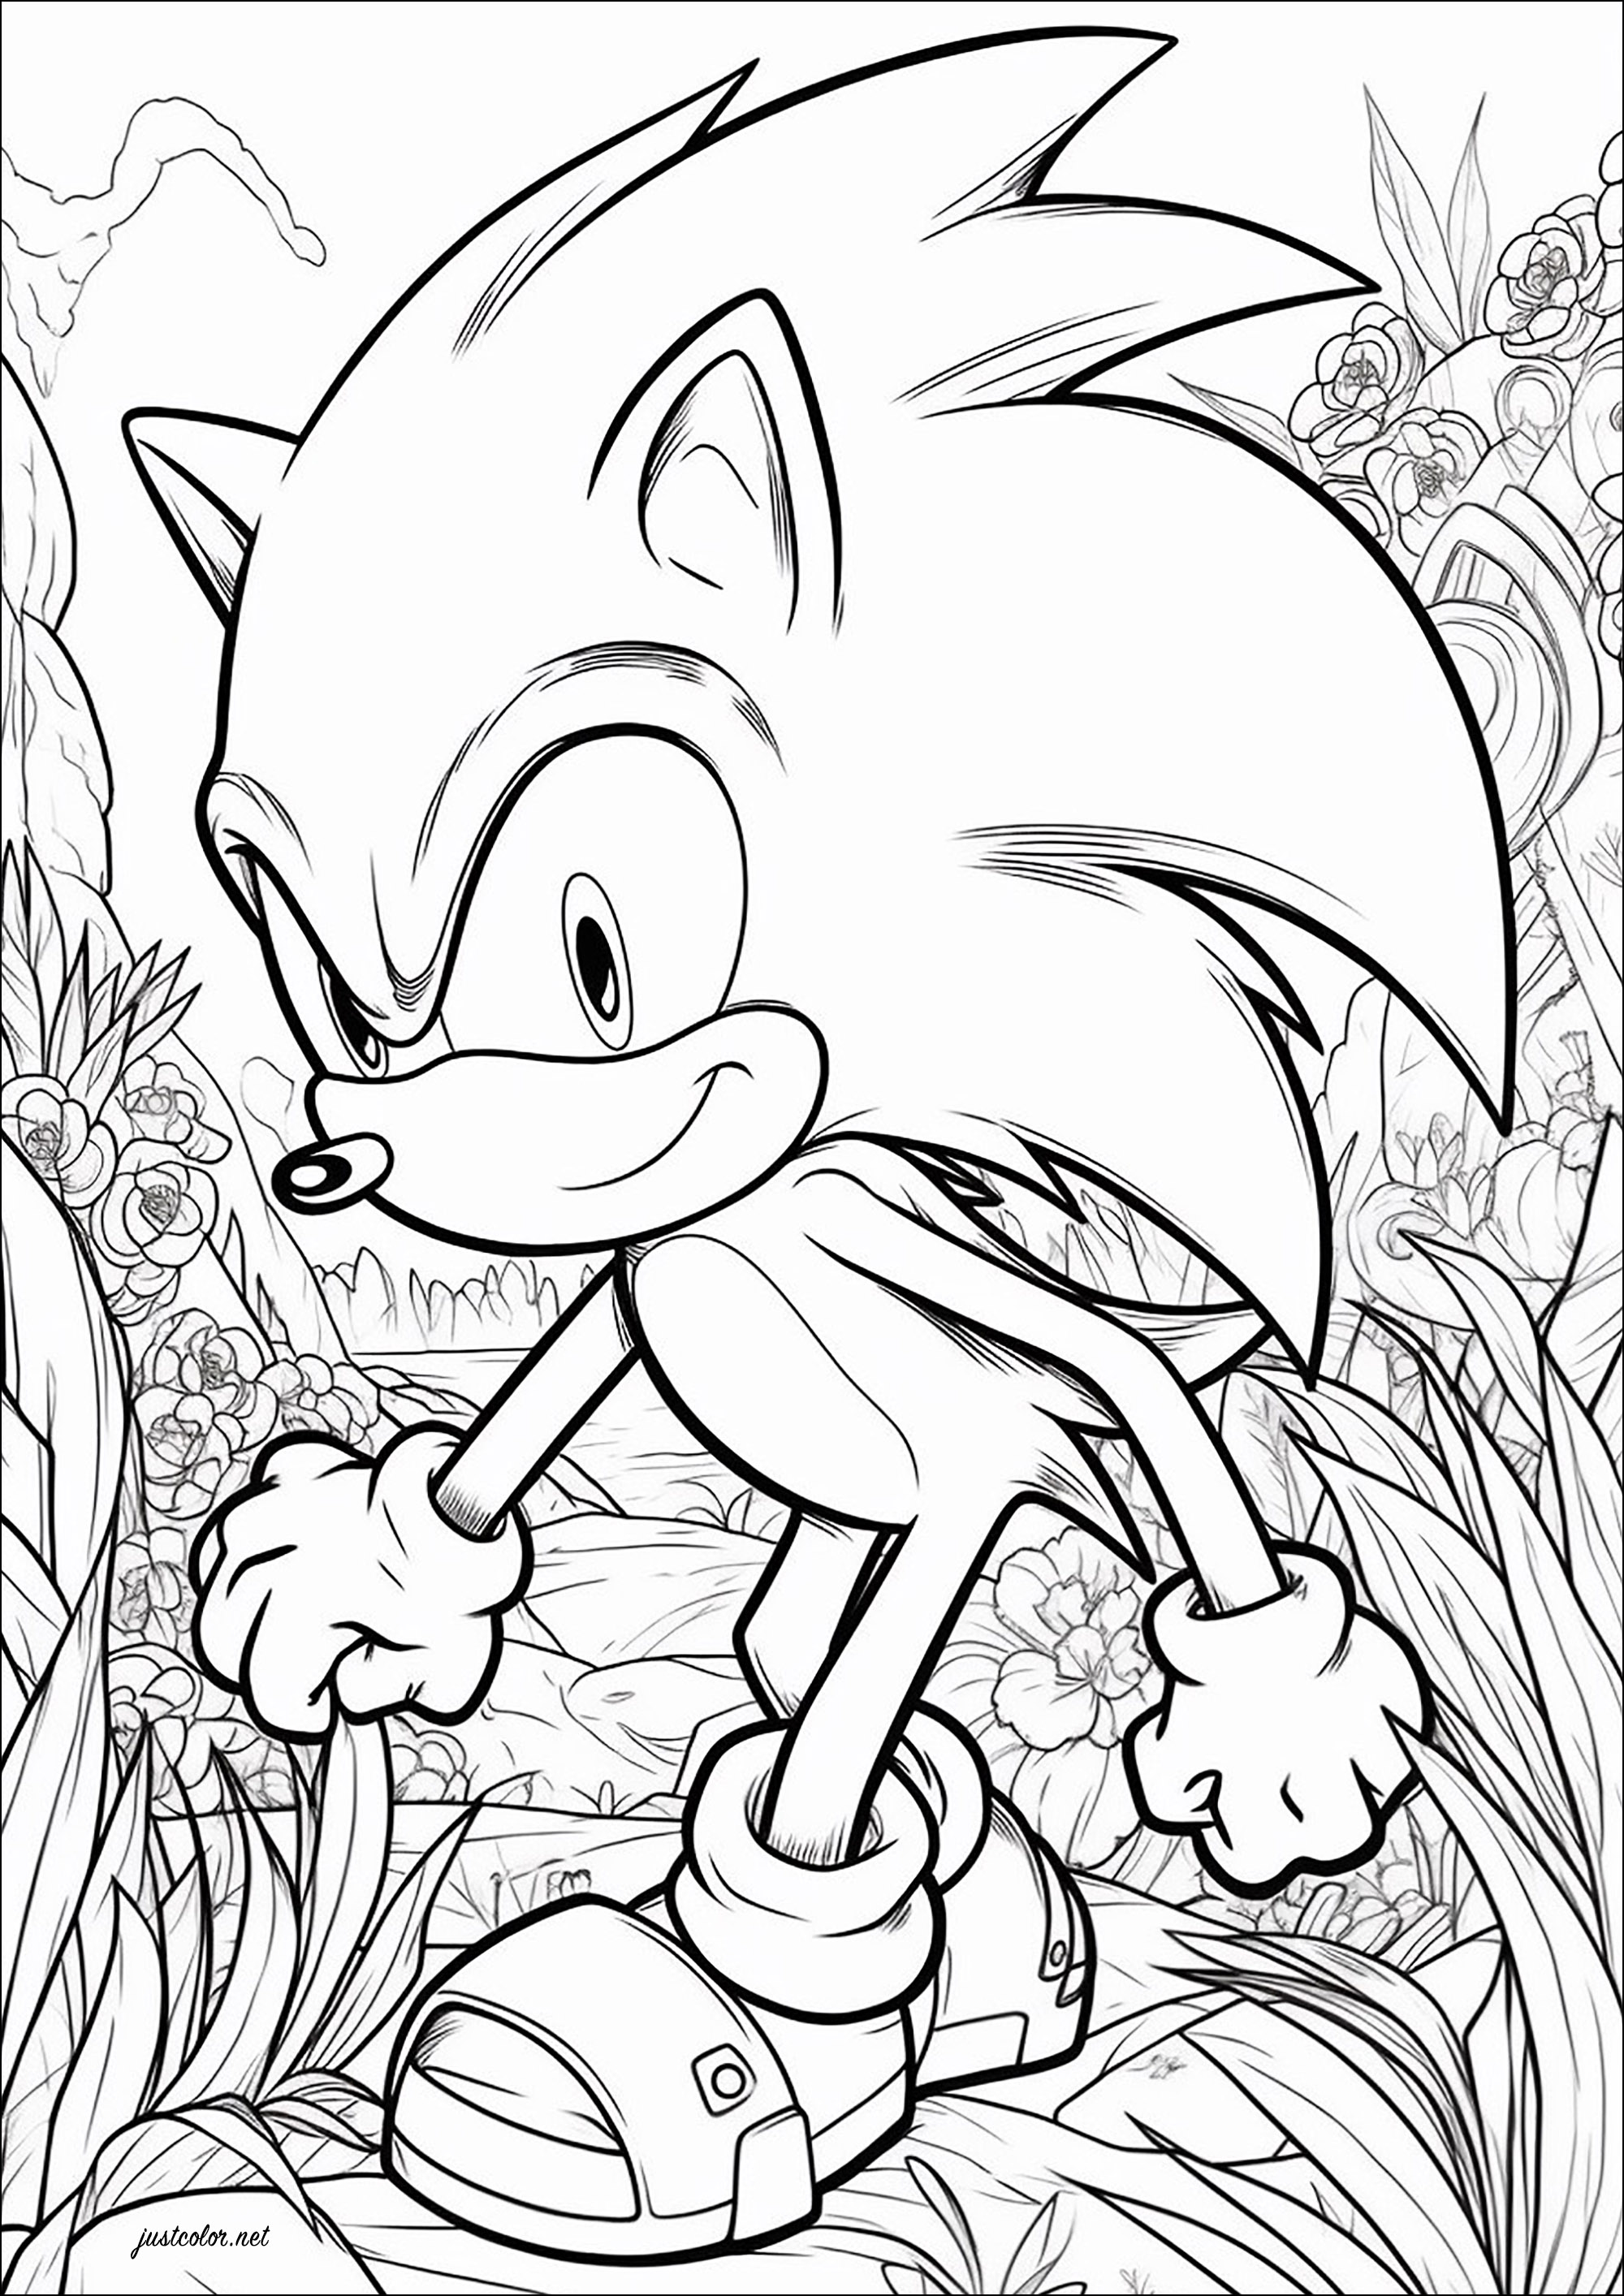 Sonic il porcospino e uno sfondo fiorito. Sonic the Hedgehog è una serie di videogiochi sviluppata dall'azienda giapponese Sega a partire dal 1991. Ha come protagonista la mascotte dell'azienda, Sonic, un riccio blu antropomorfo, che combatte contro l'antagonista principale della serie, il Dr. Eggman.